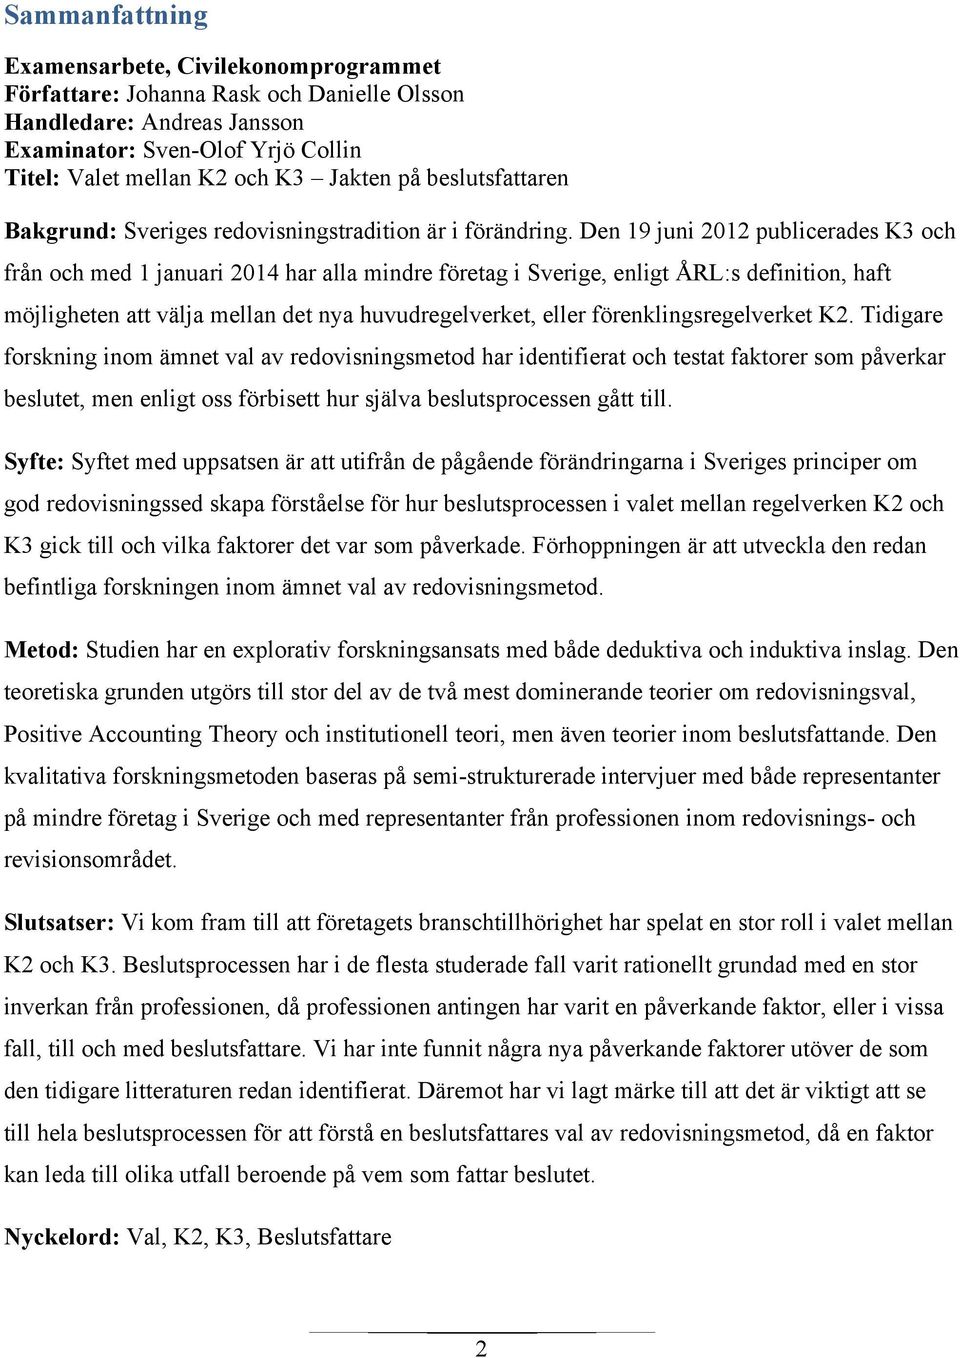 Den 19 juni 2012 publicerades K3 och från och med 1 januari 2014 har alla mindre företag i Sverige, enligt ÅRL:s definition, haft möjligheten att välja mellan det nya huvudregelverket, eller